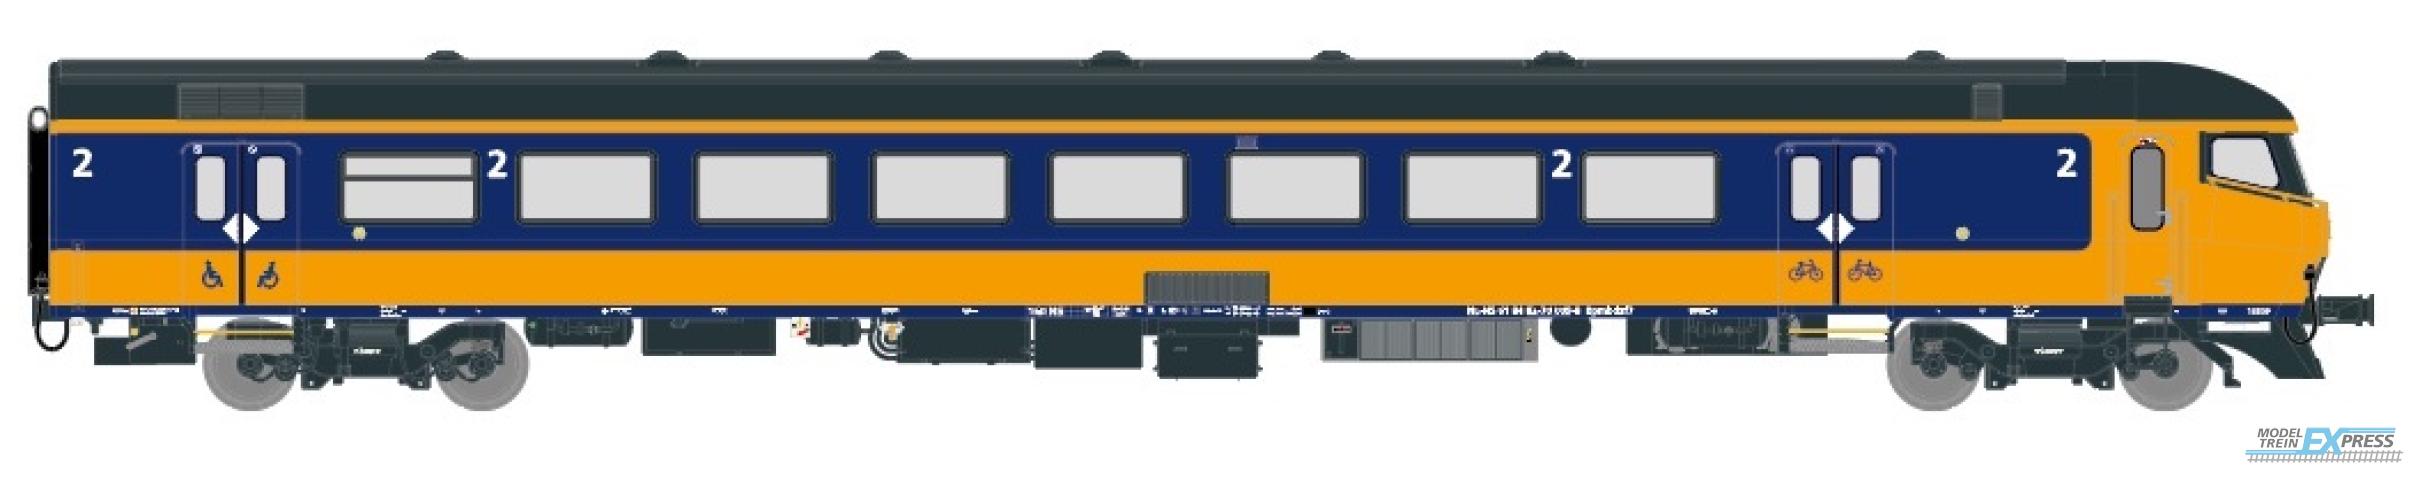 Exact-train 11192 NS ICRm Amsterdam - Rotterdam für den Inlandseinsatz Steuerwagen Bpmbdzf7 (Farbe Gelb / Blau) (AC Marklin), Ep. VI